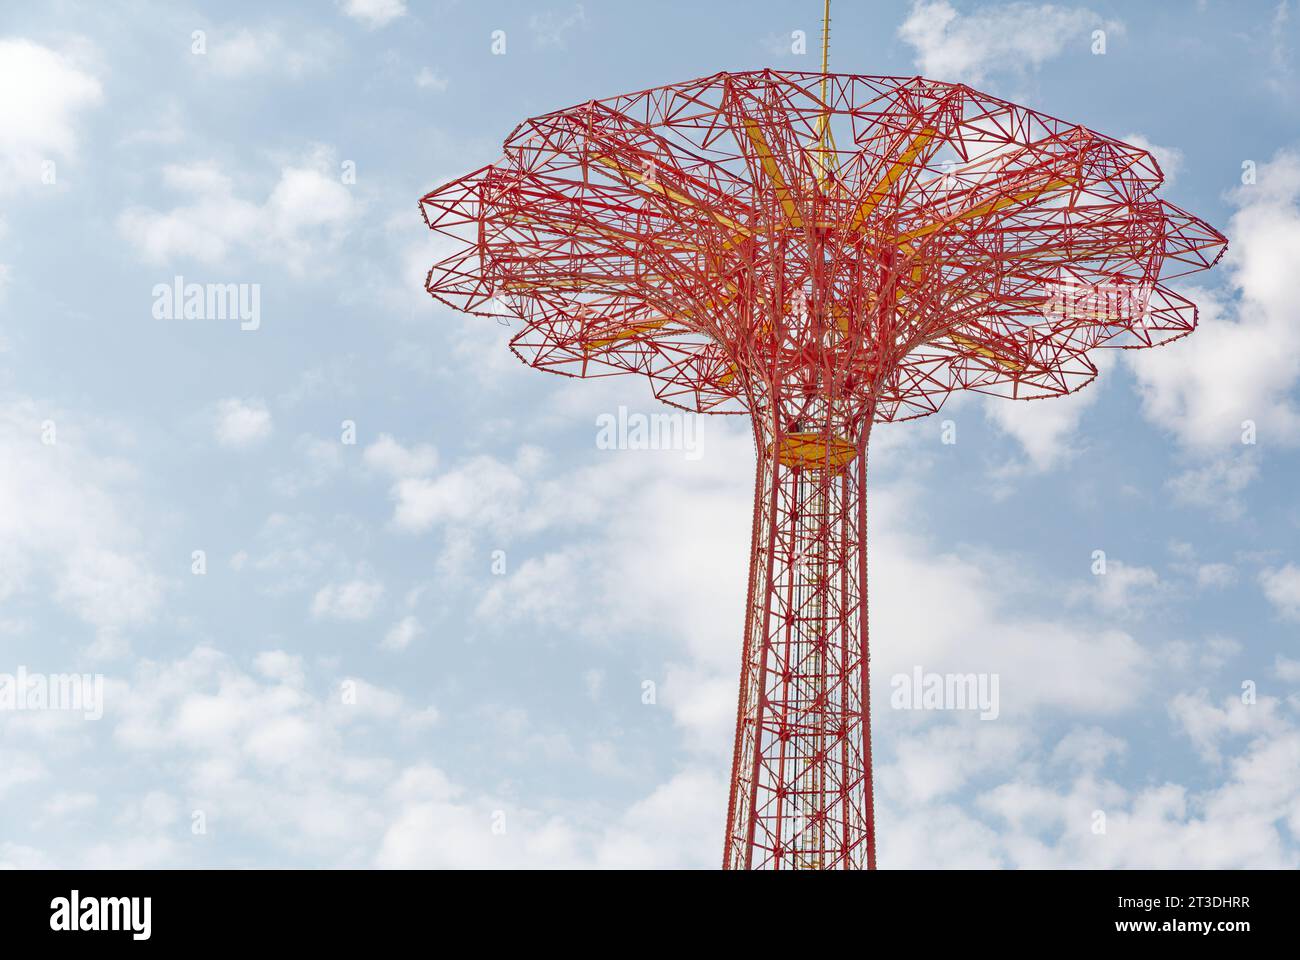 Parachutes disparus depuis longtemps, la tour parachute Jump domine toujours la Skyline de Coney Island. Le repère rouge vif est éclairé la nuit. Banque D'Images